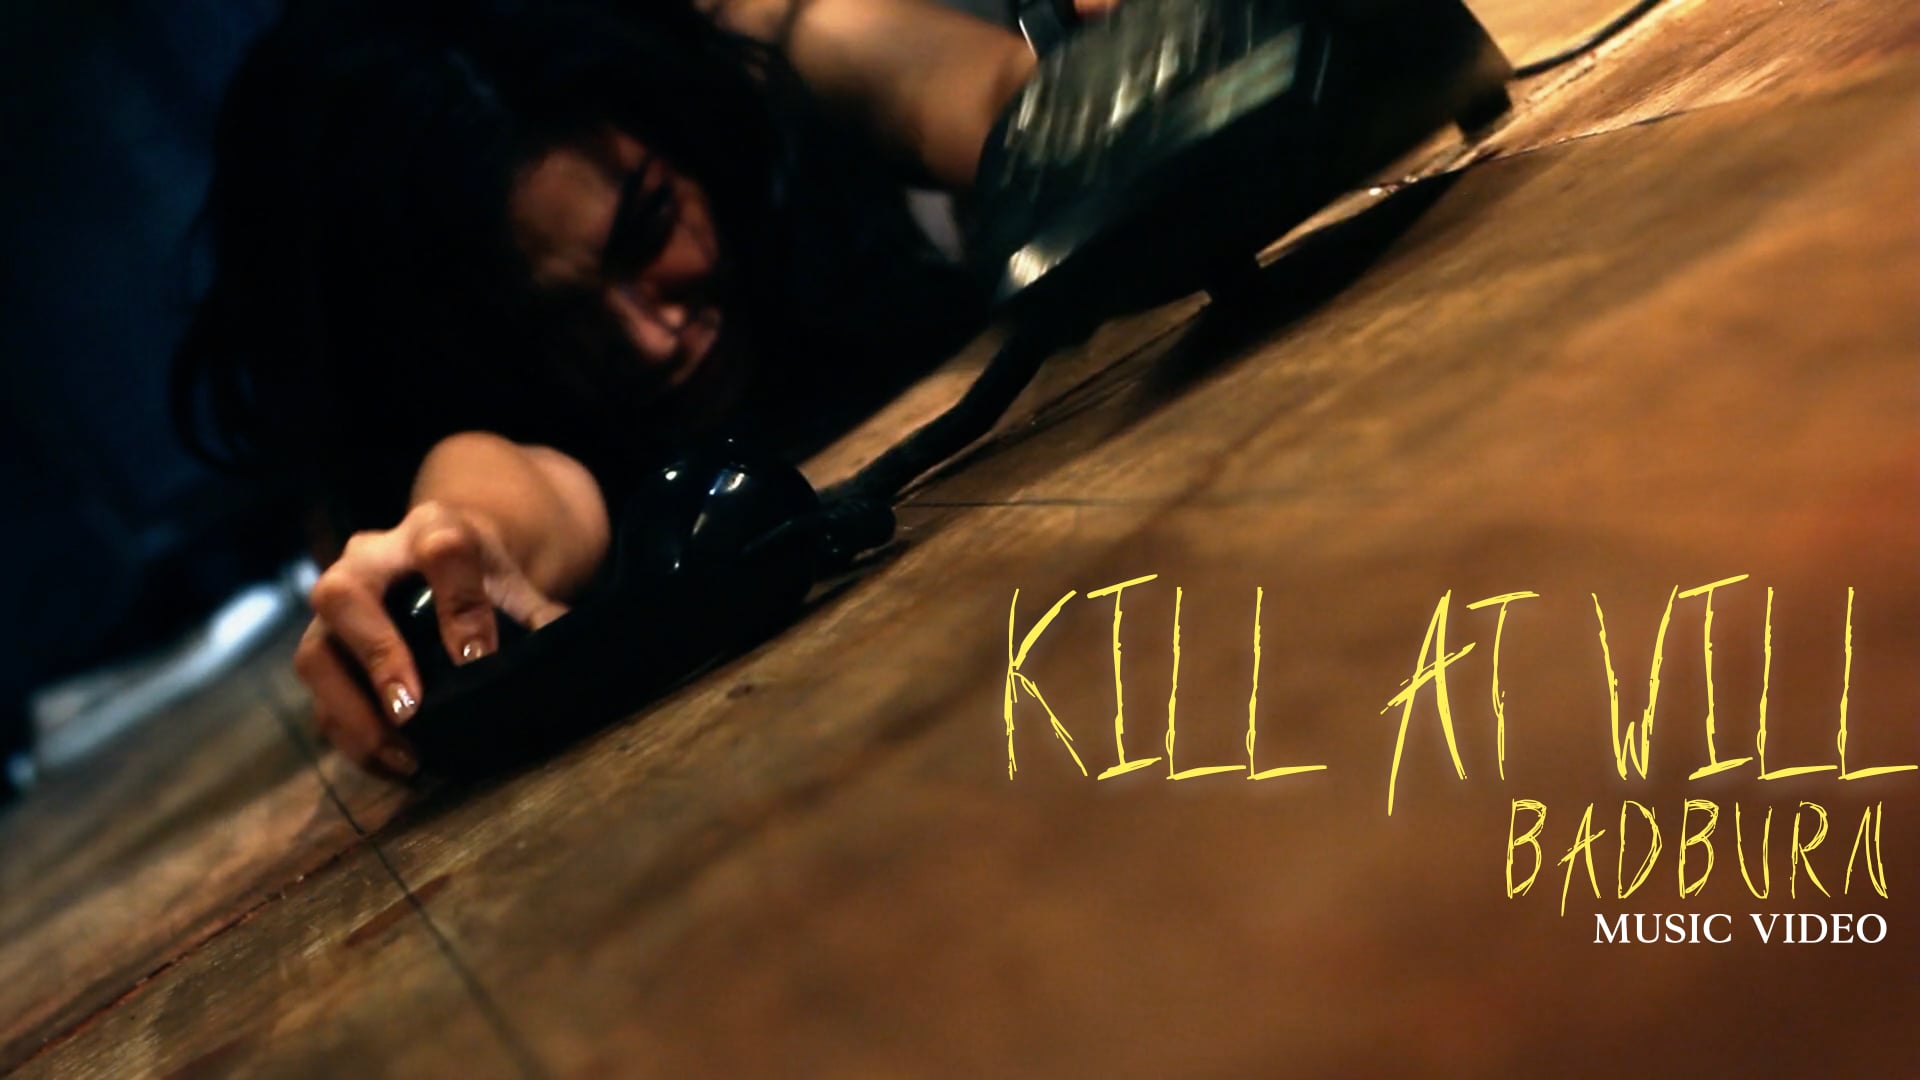 Kill at Will - Badburn Music Video